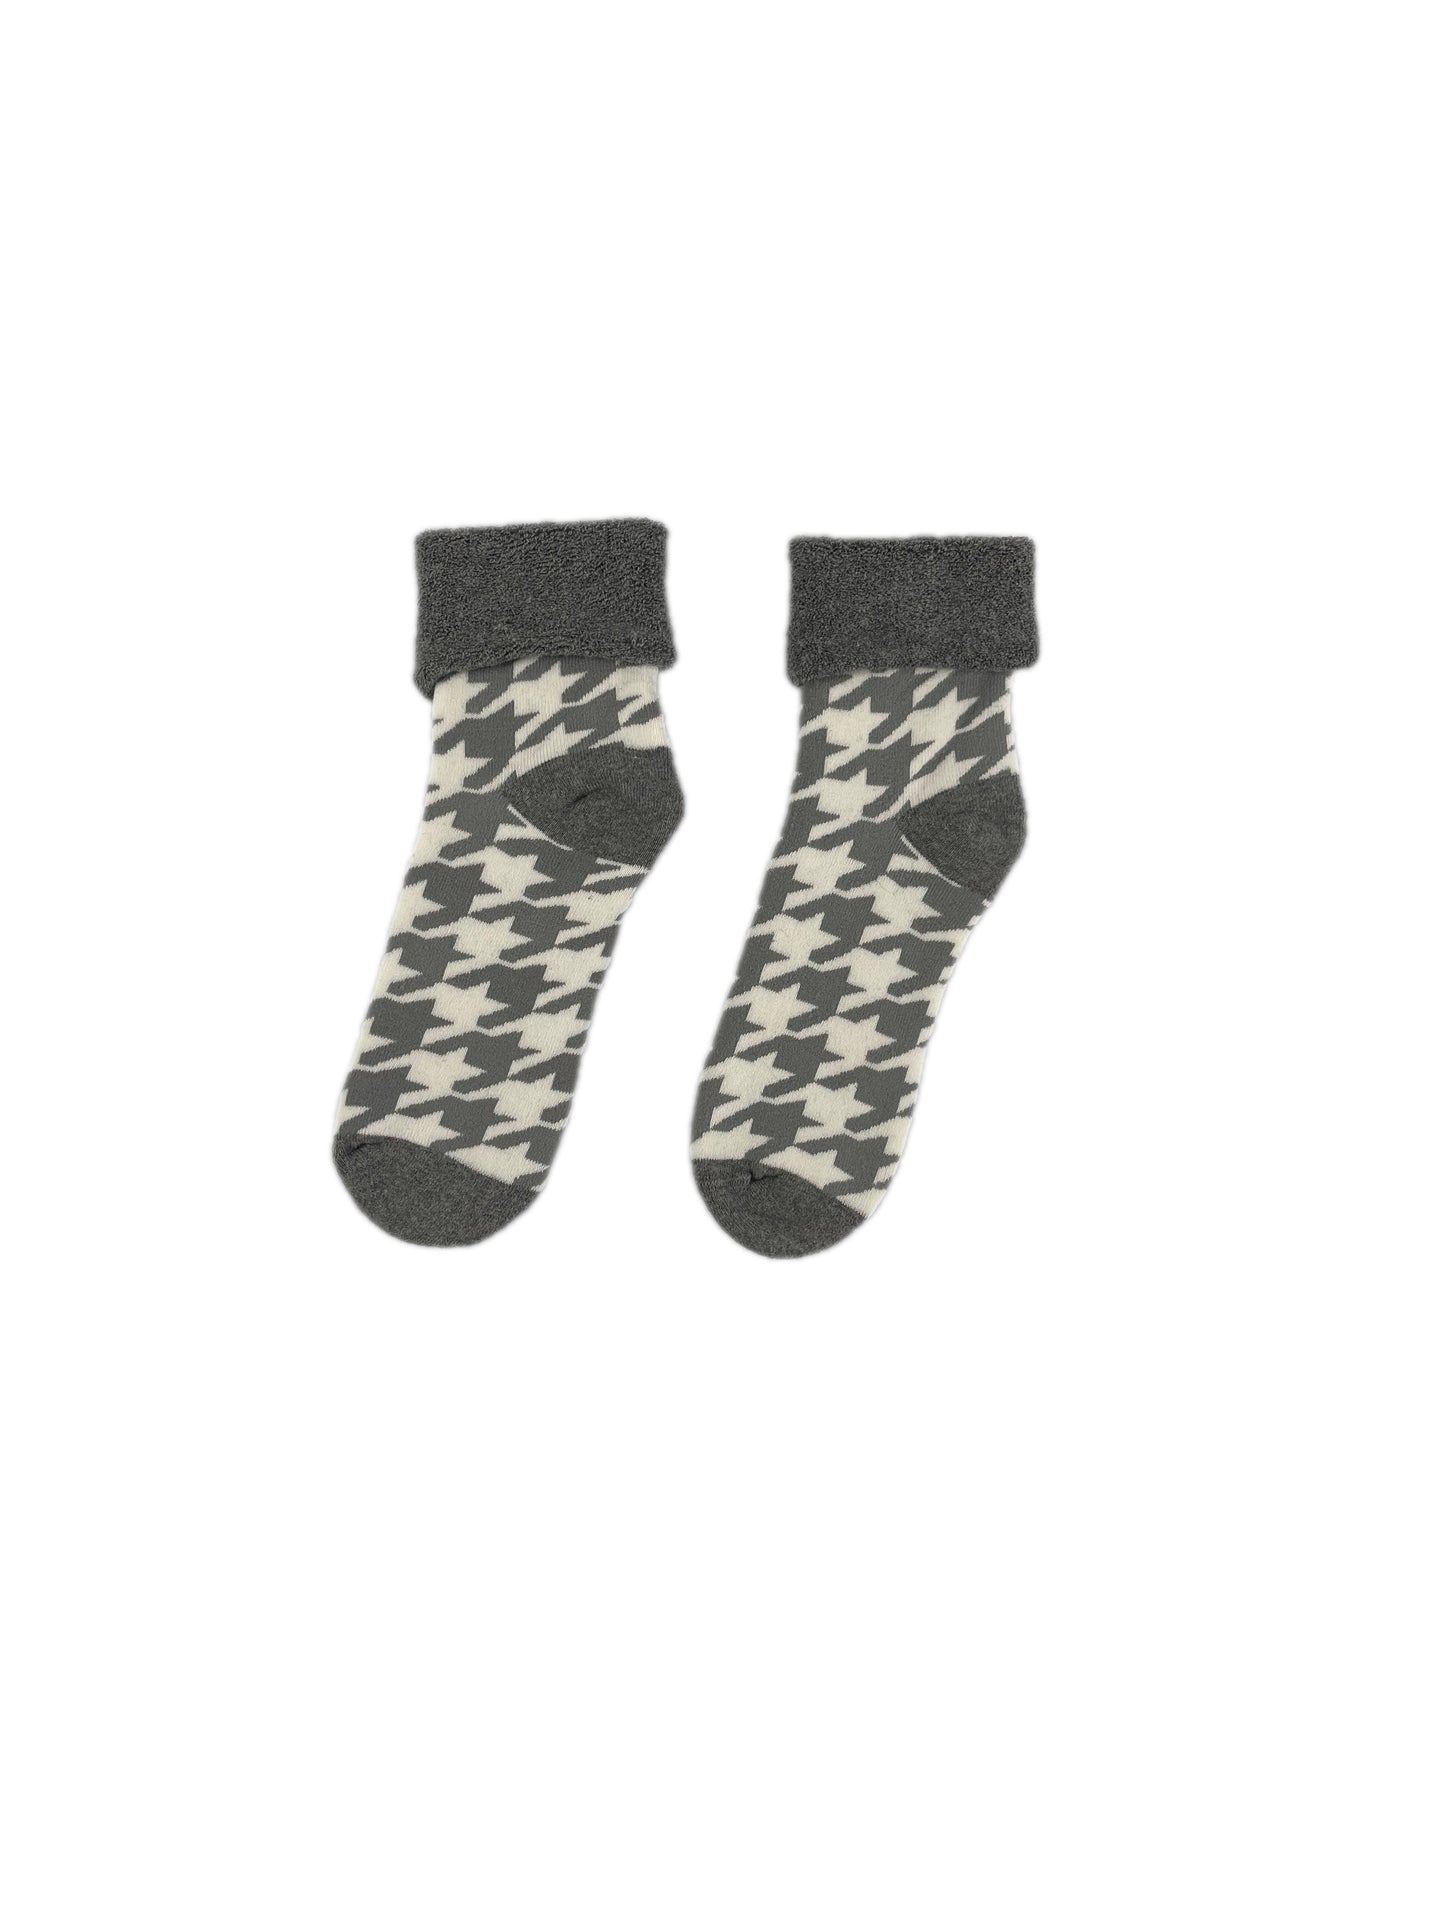 Kaz ayağı desenli peluşlu havlu çorap